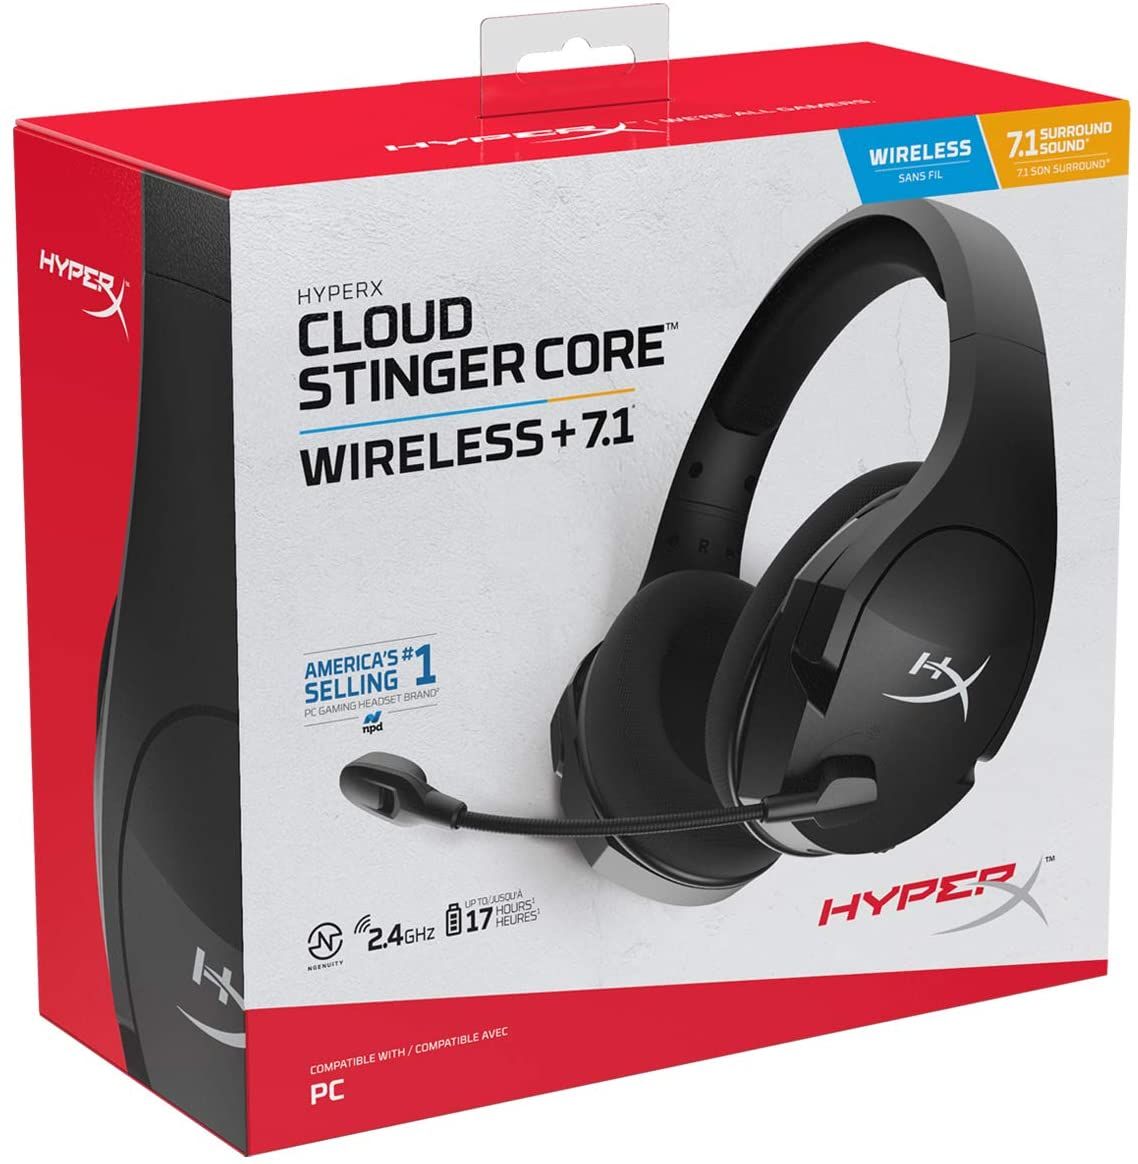 HyperX Cloud Stinger Core Box